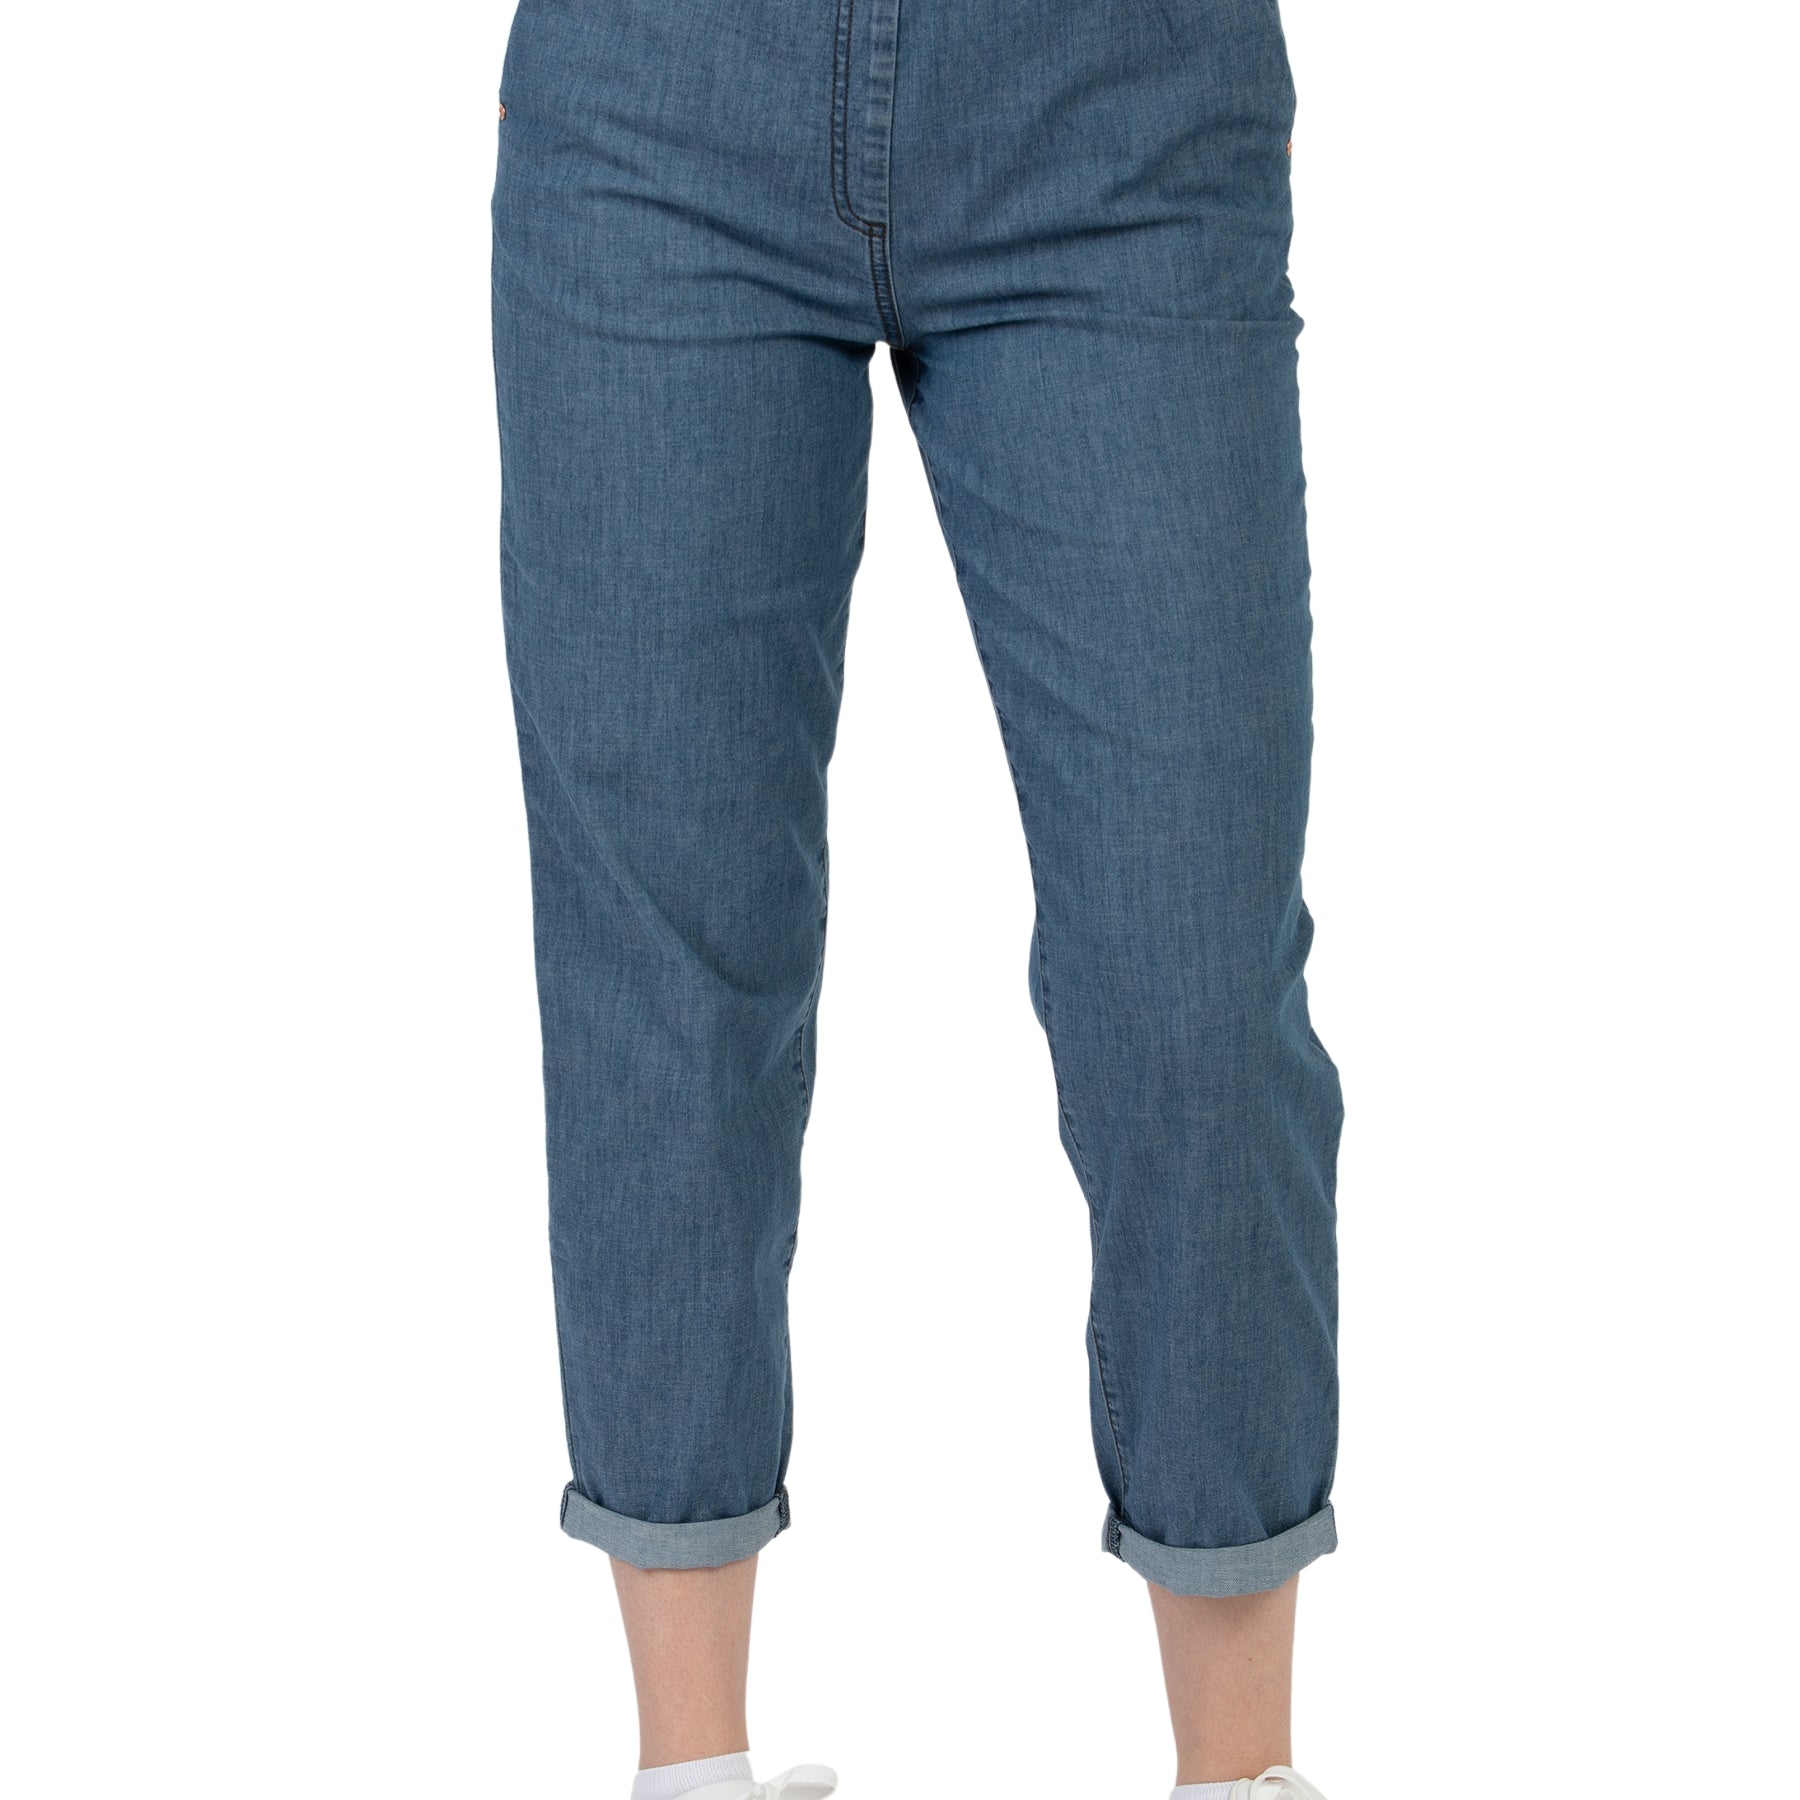 Pantalone Donna Jeans Leggero RAGNO DN18P7